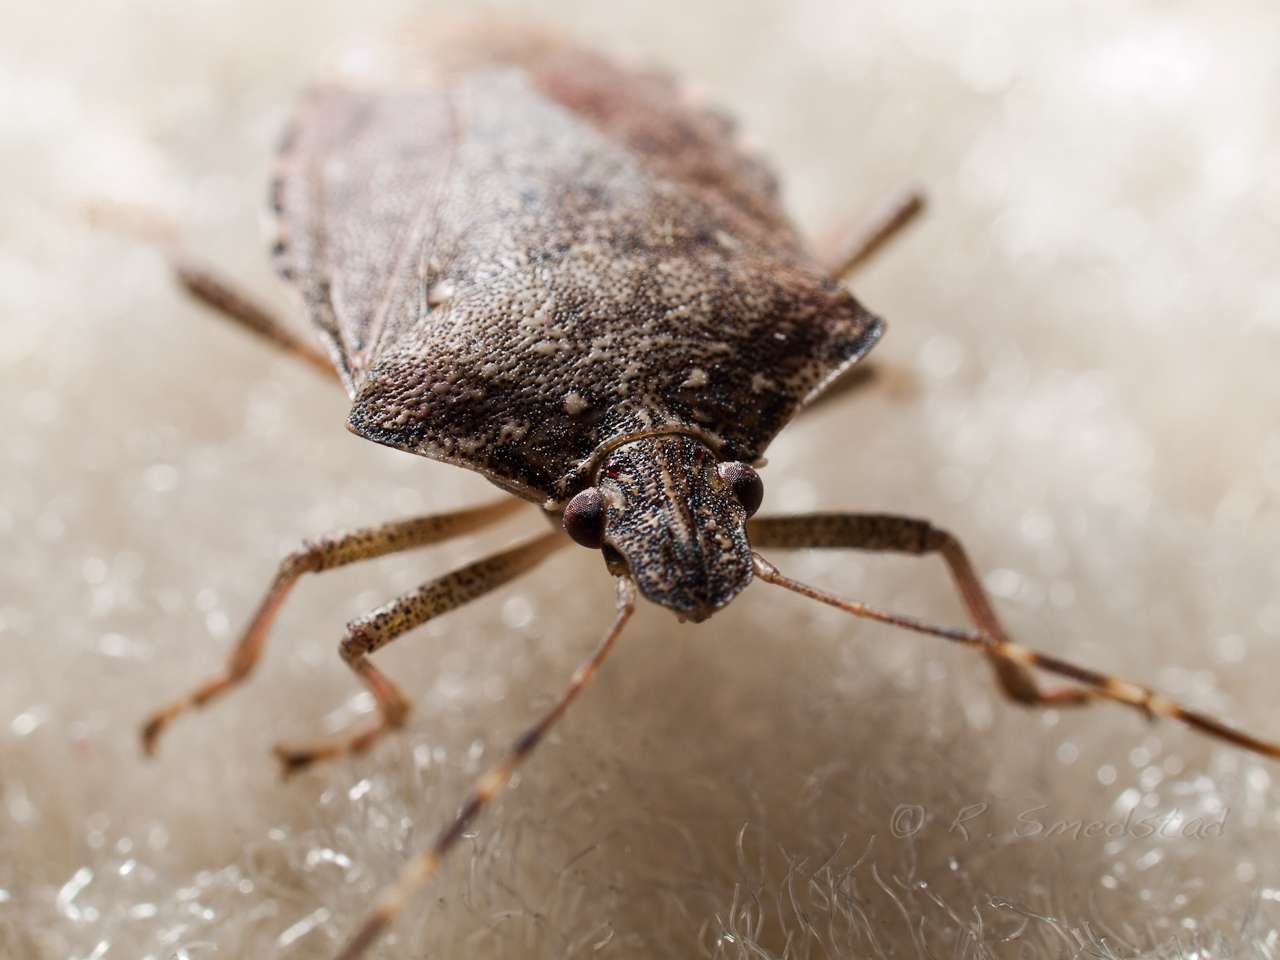 Close up on a stink bug